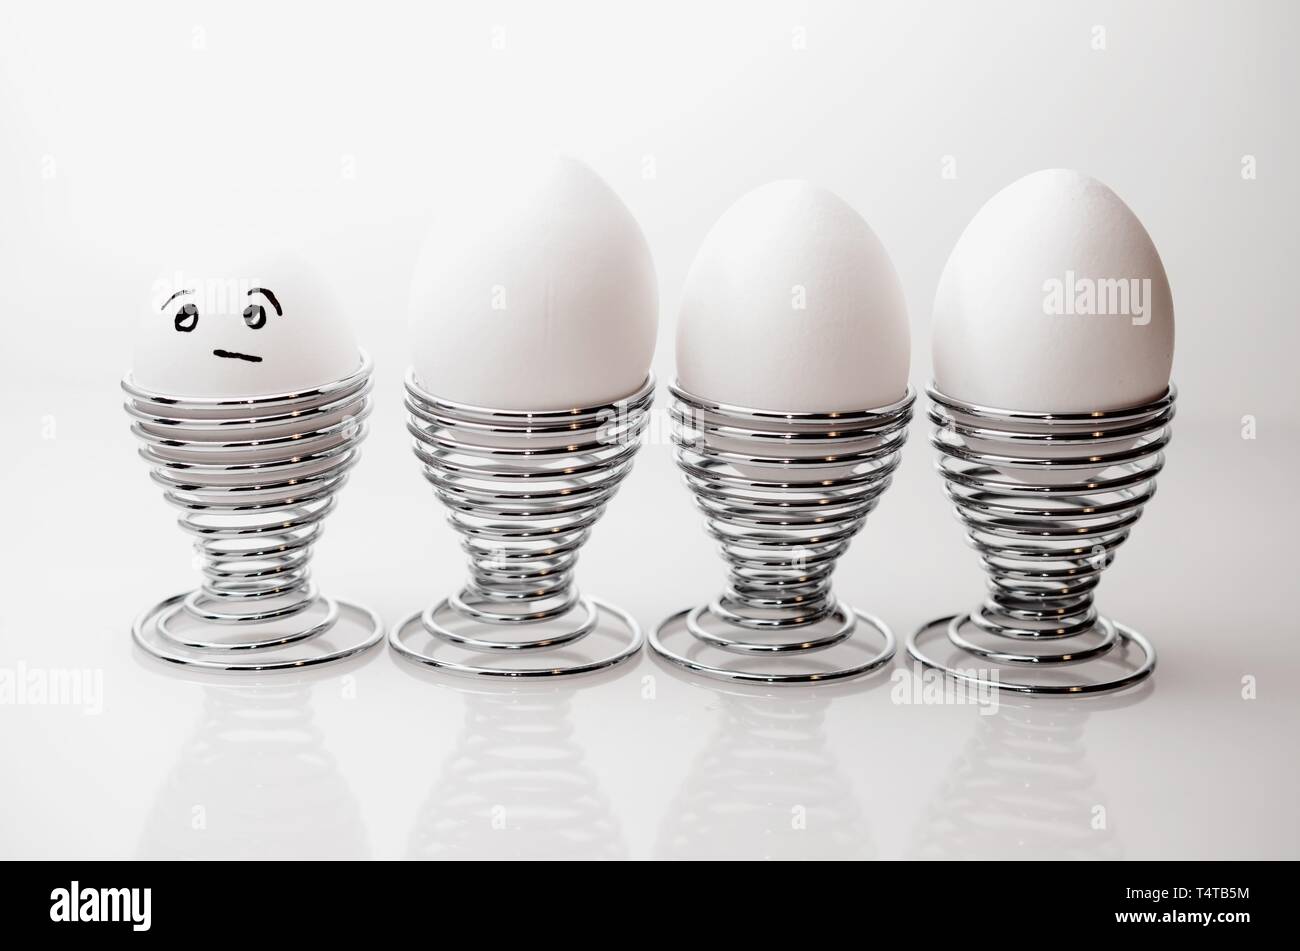 Quatre œufs de poule blanche en argent cm, un oeuf de poule anthropomorphe avec expression du visage, le grincheux à silver egg cups. Banque D'Images